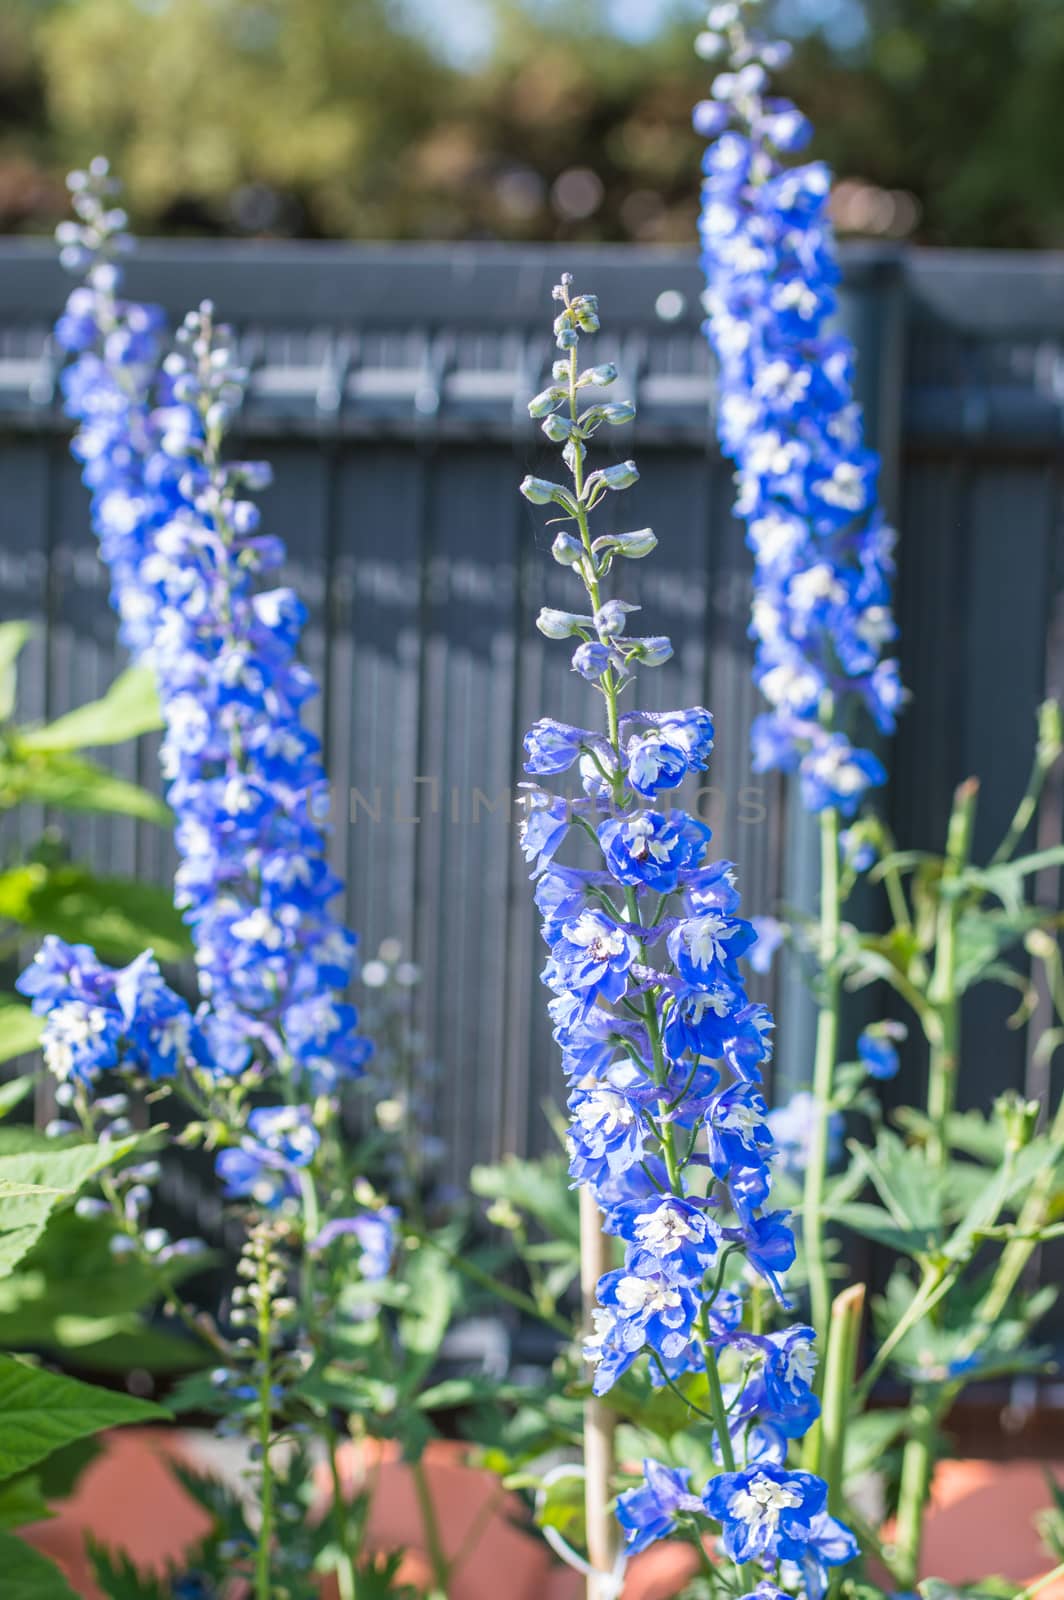 blue flowers growing in garden by okskukuruza